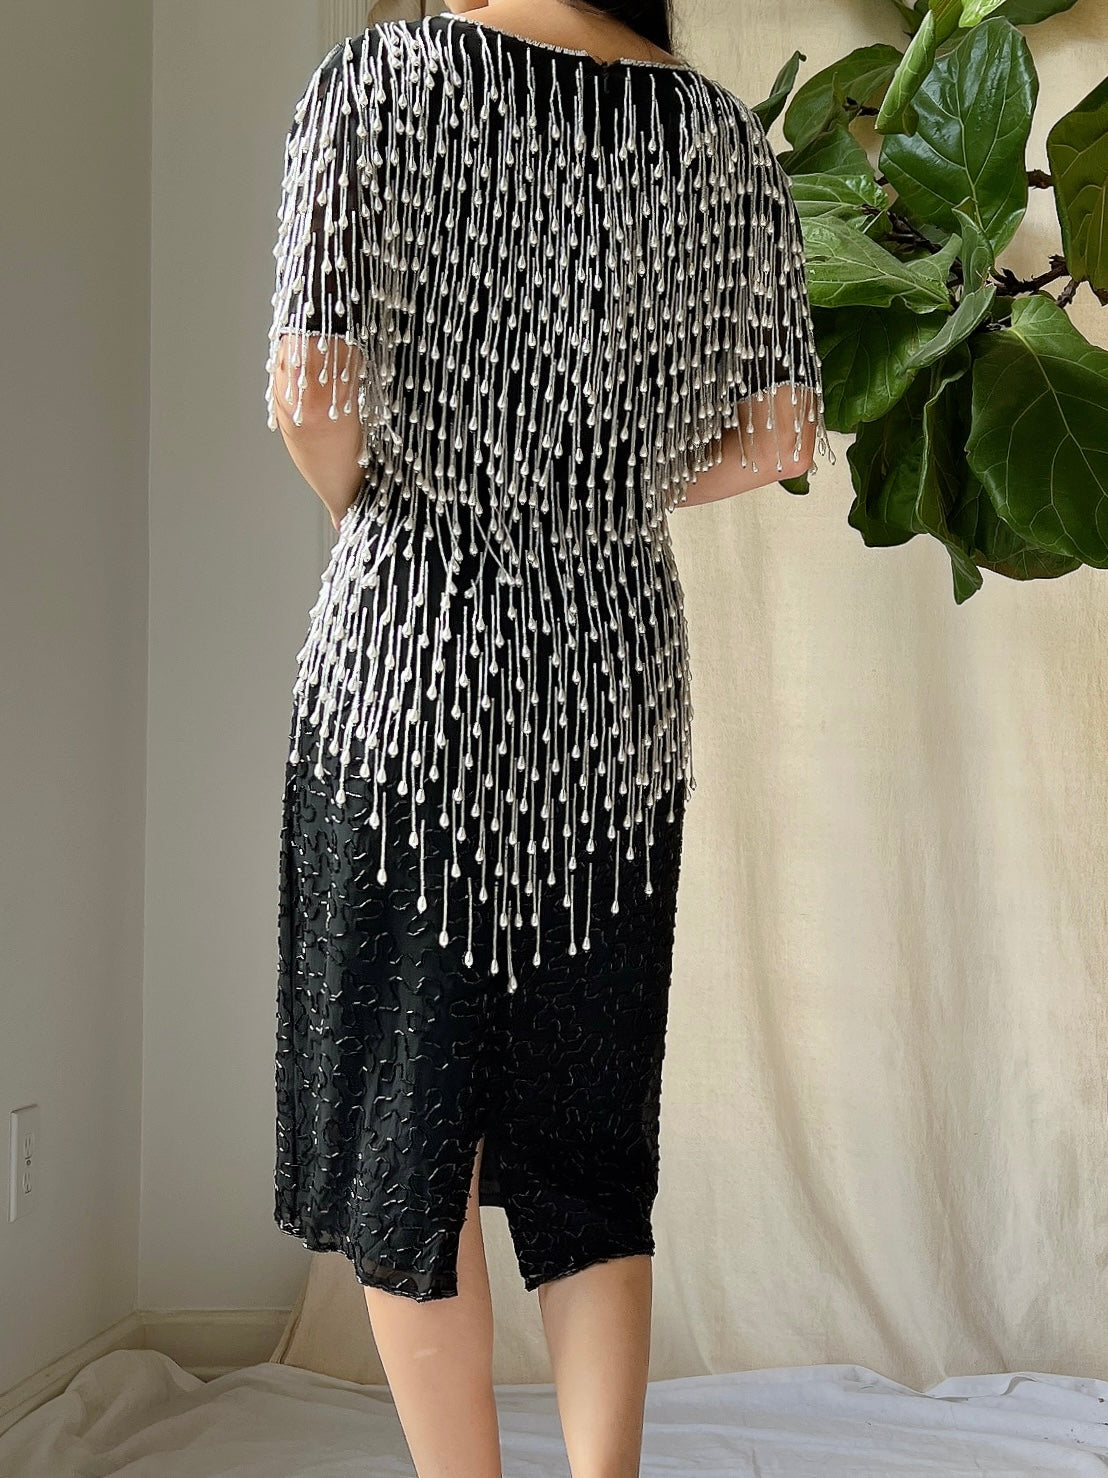 Vintage Pearl Fringe Dress - S/M